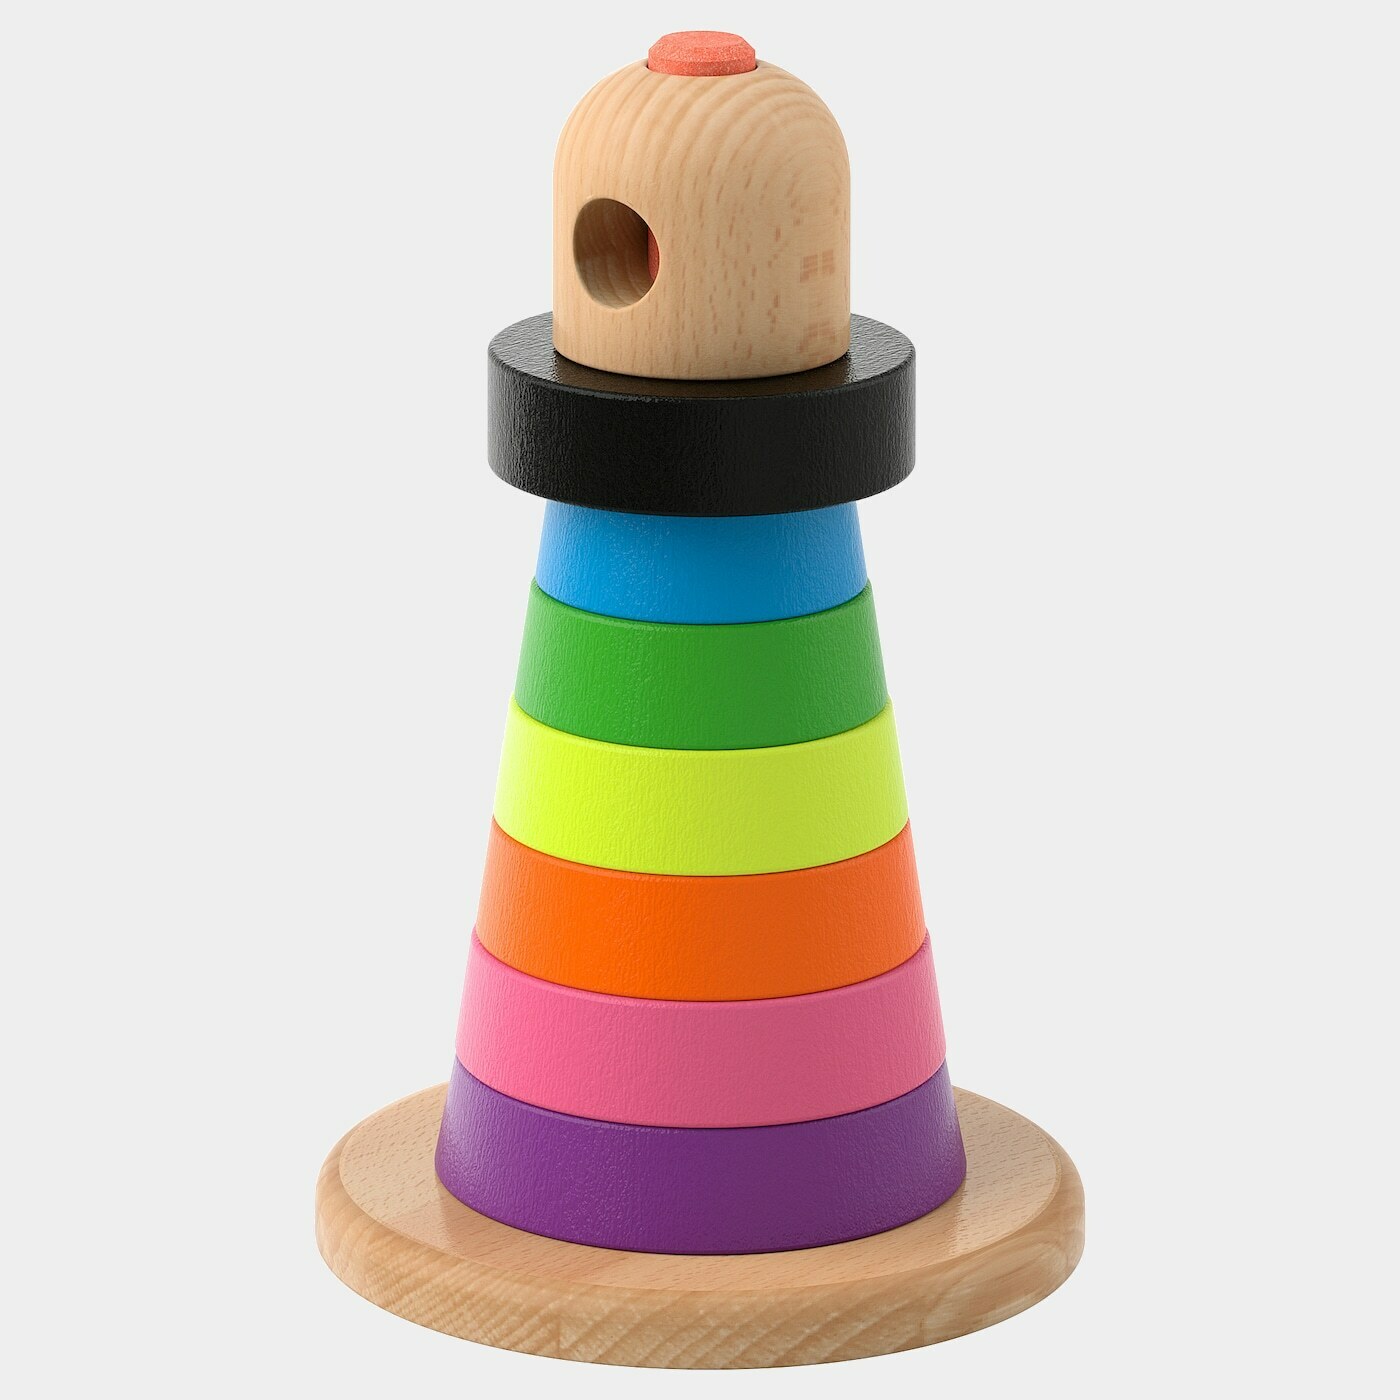 MULA Ringpyramide  - Babyspielzeug - Babyausstattung & Kinderzimmerzubehör Ideen für dein Zuhause von Home Trends. Babyausstattung & Kinderzimmerzubehör Trends von Social Media Influencer für dein Skandi Zuhause.